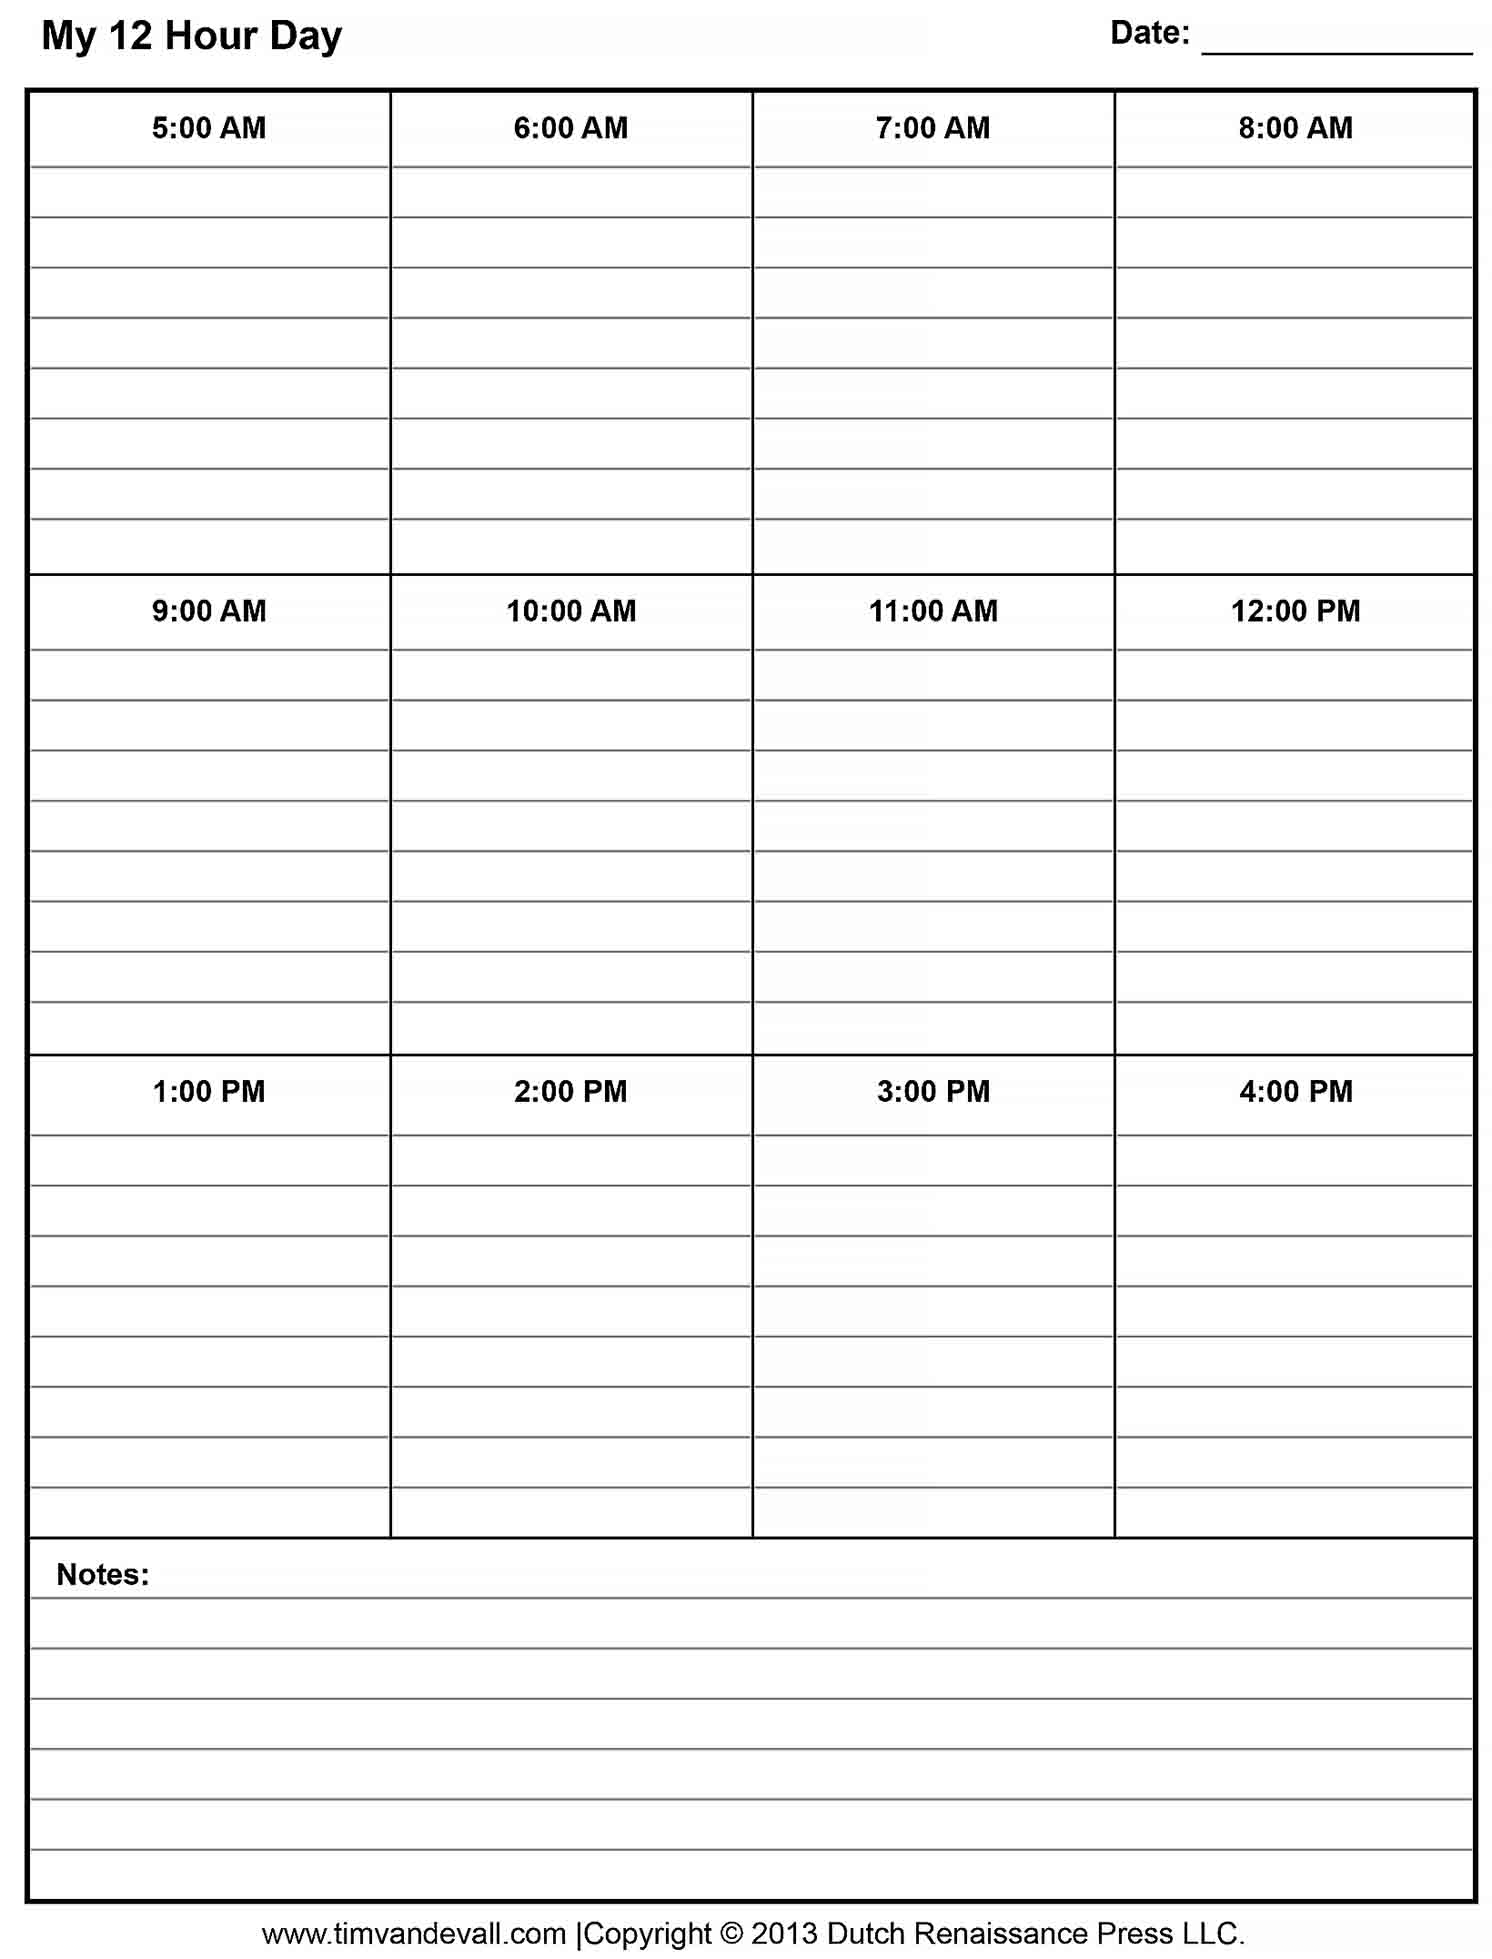 12 Hour Shift Schedule Template - Culturopedia